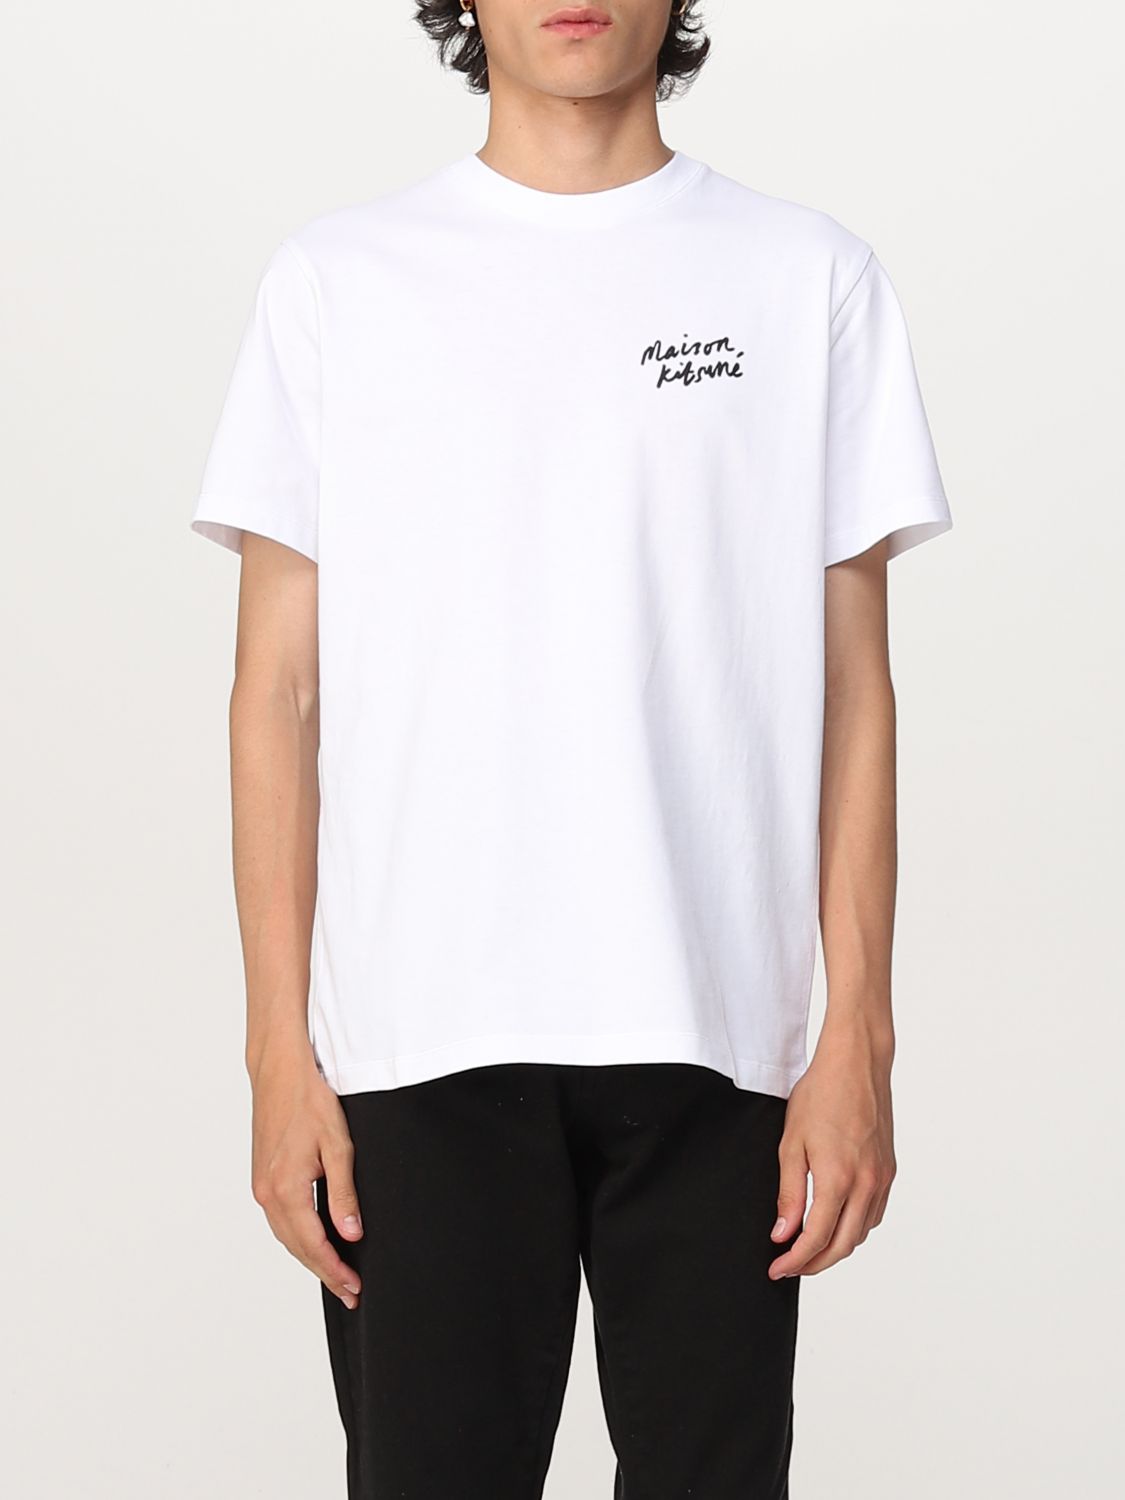 MAISON KITSUNÉ: t-shirt for man - White | Maison Kitsuné t-shirt ...